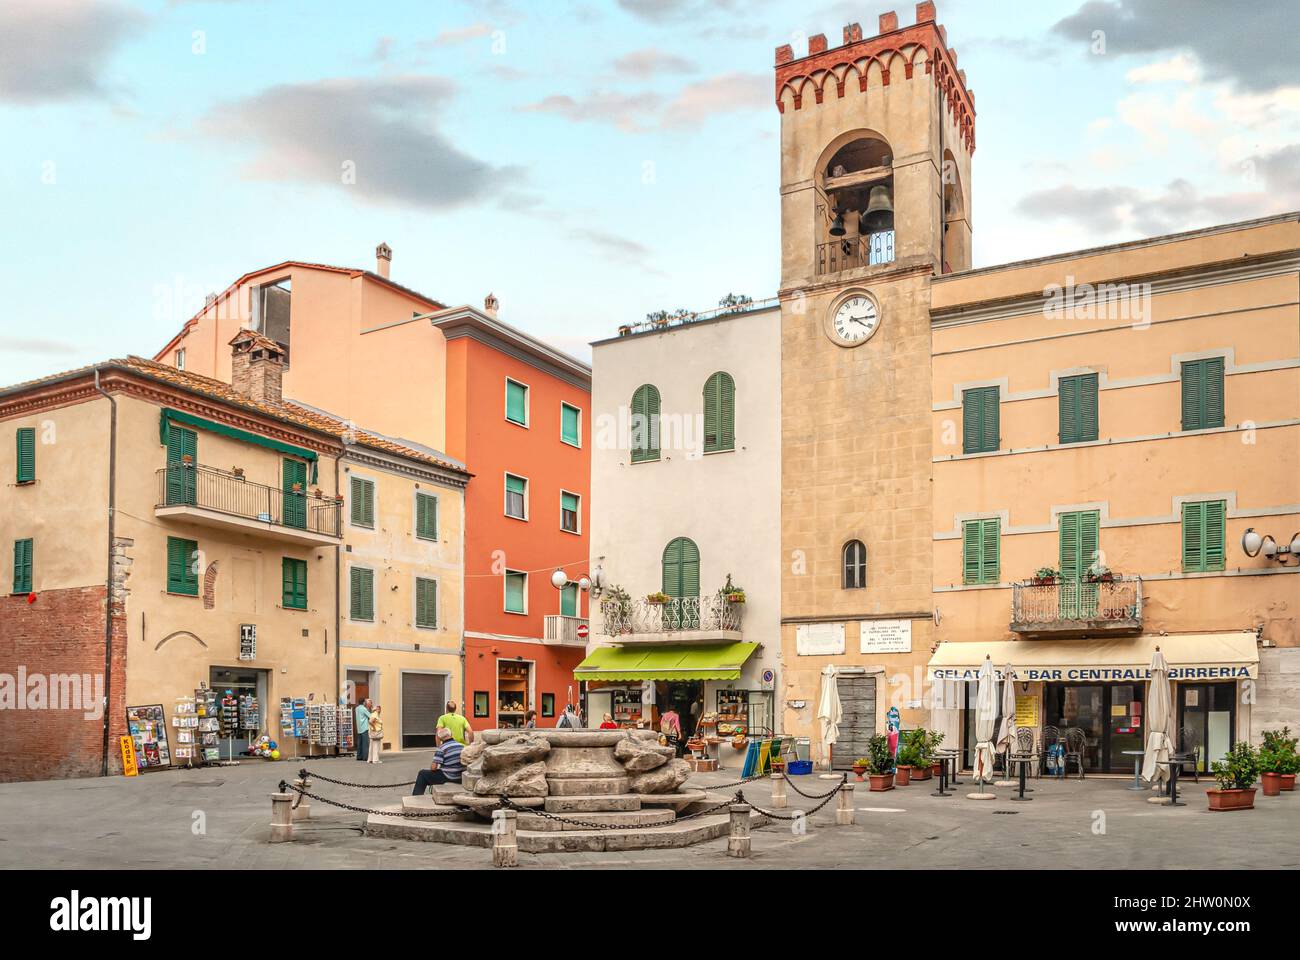 Town center of Castiglione del Lago, Umbria, Italy Stock Photo